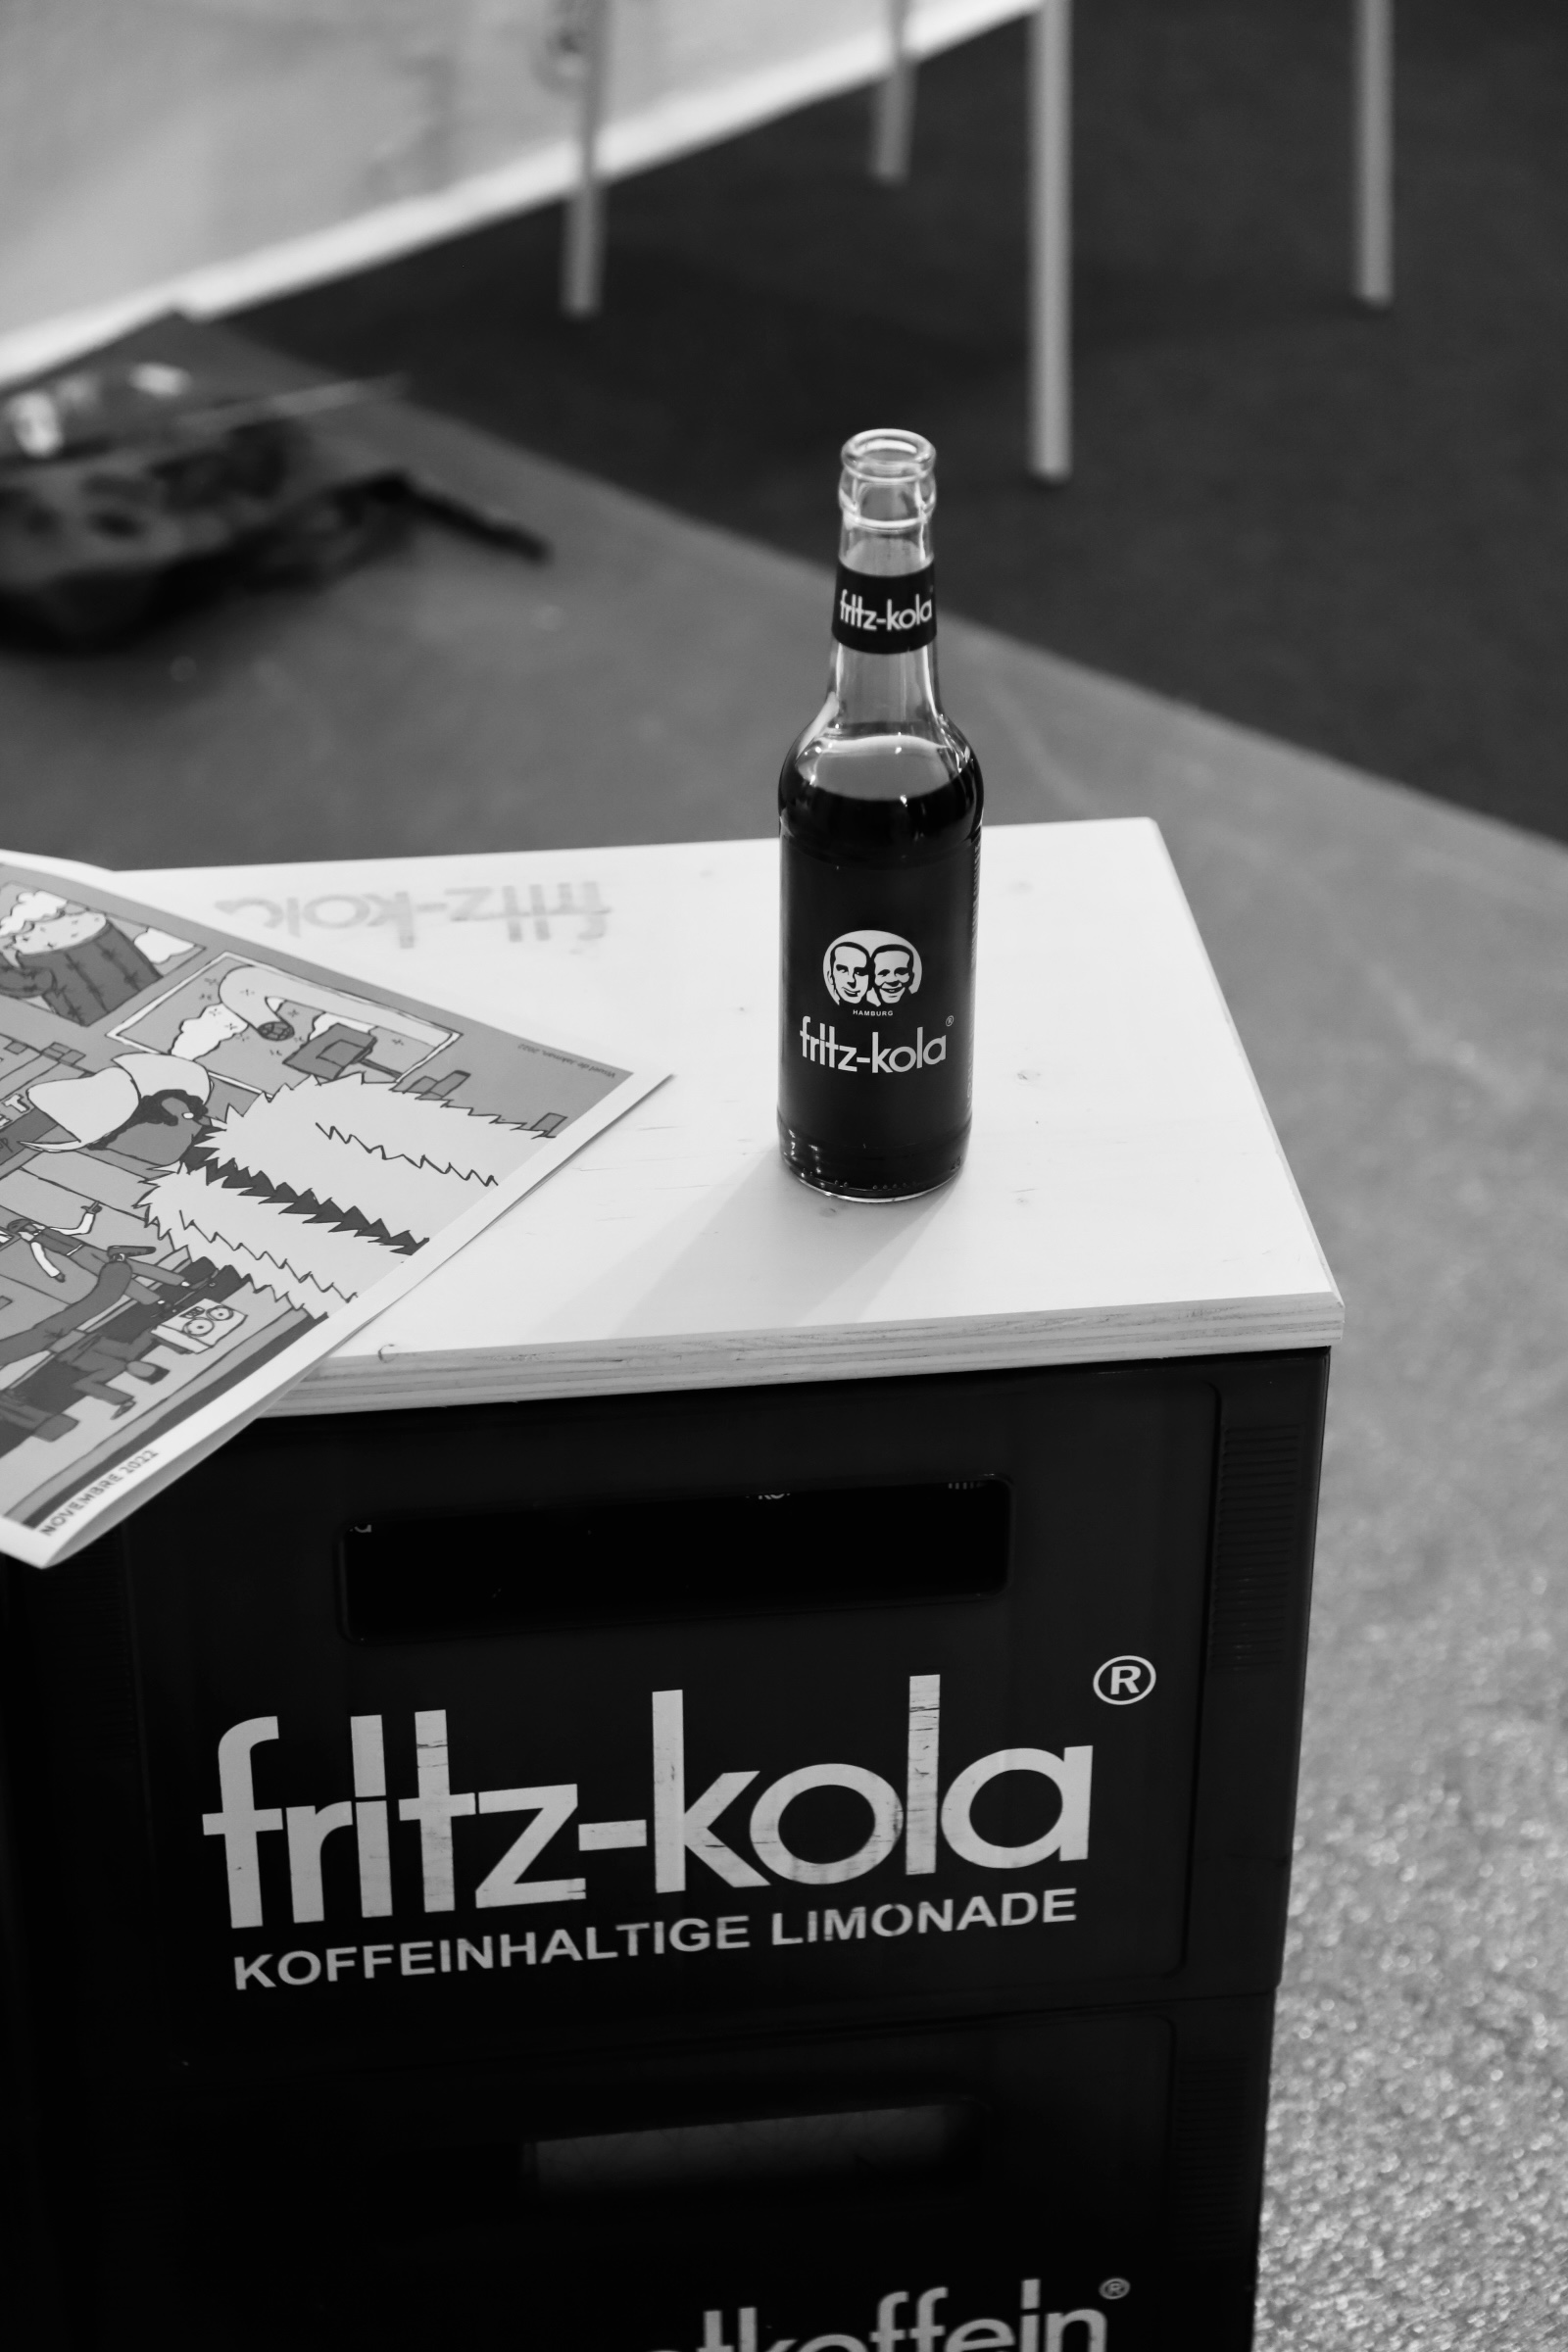 une bouteille de fritz kola posé sur des caisses fritz kola lors d'urban influence